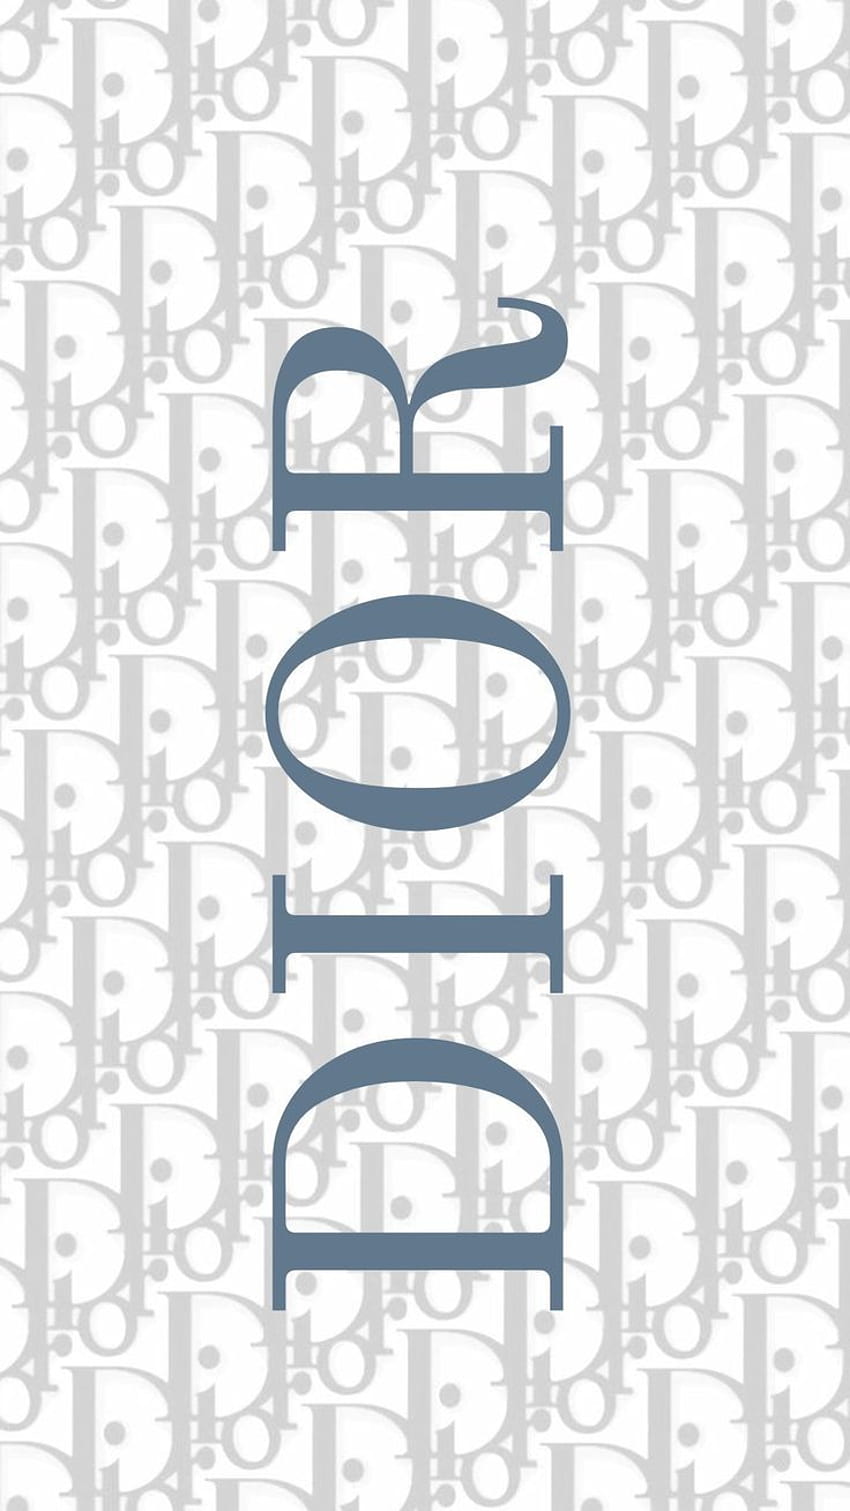 Tải mẫu logo thương hiệu Dior file vector AI, EPS, JPEG, SVG, PNG, PNG